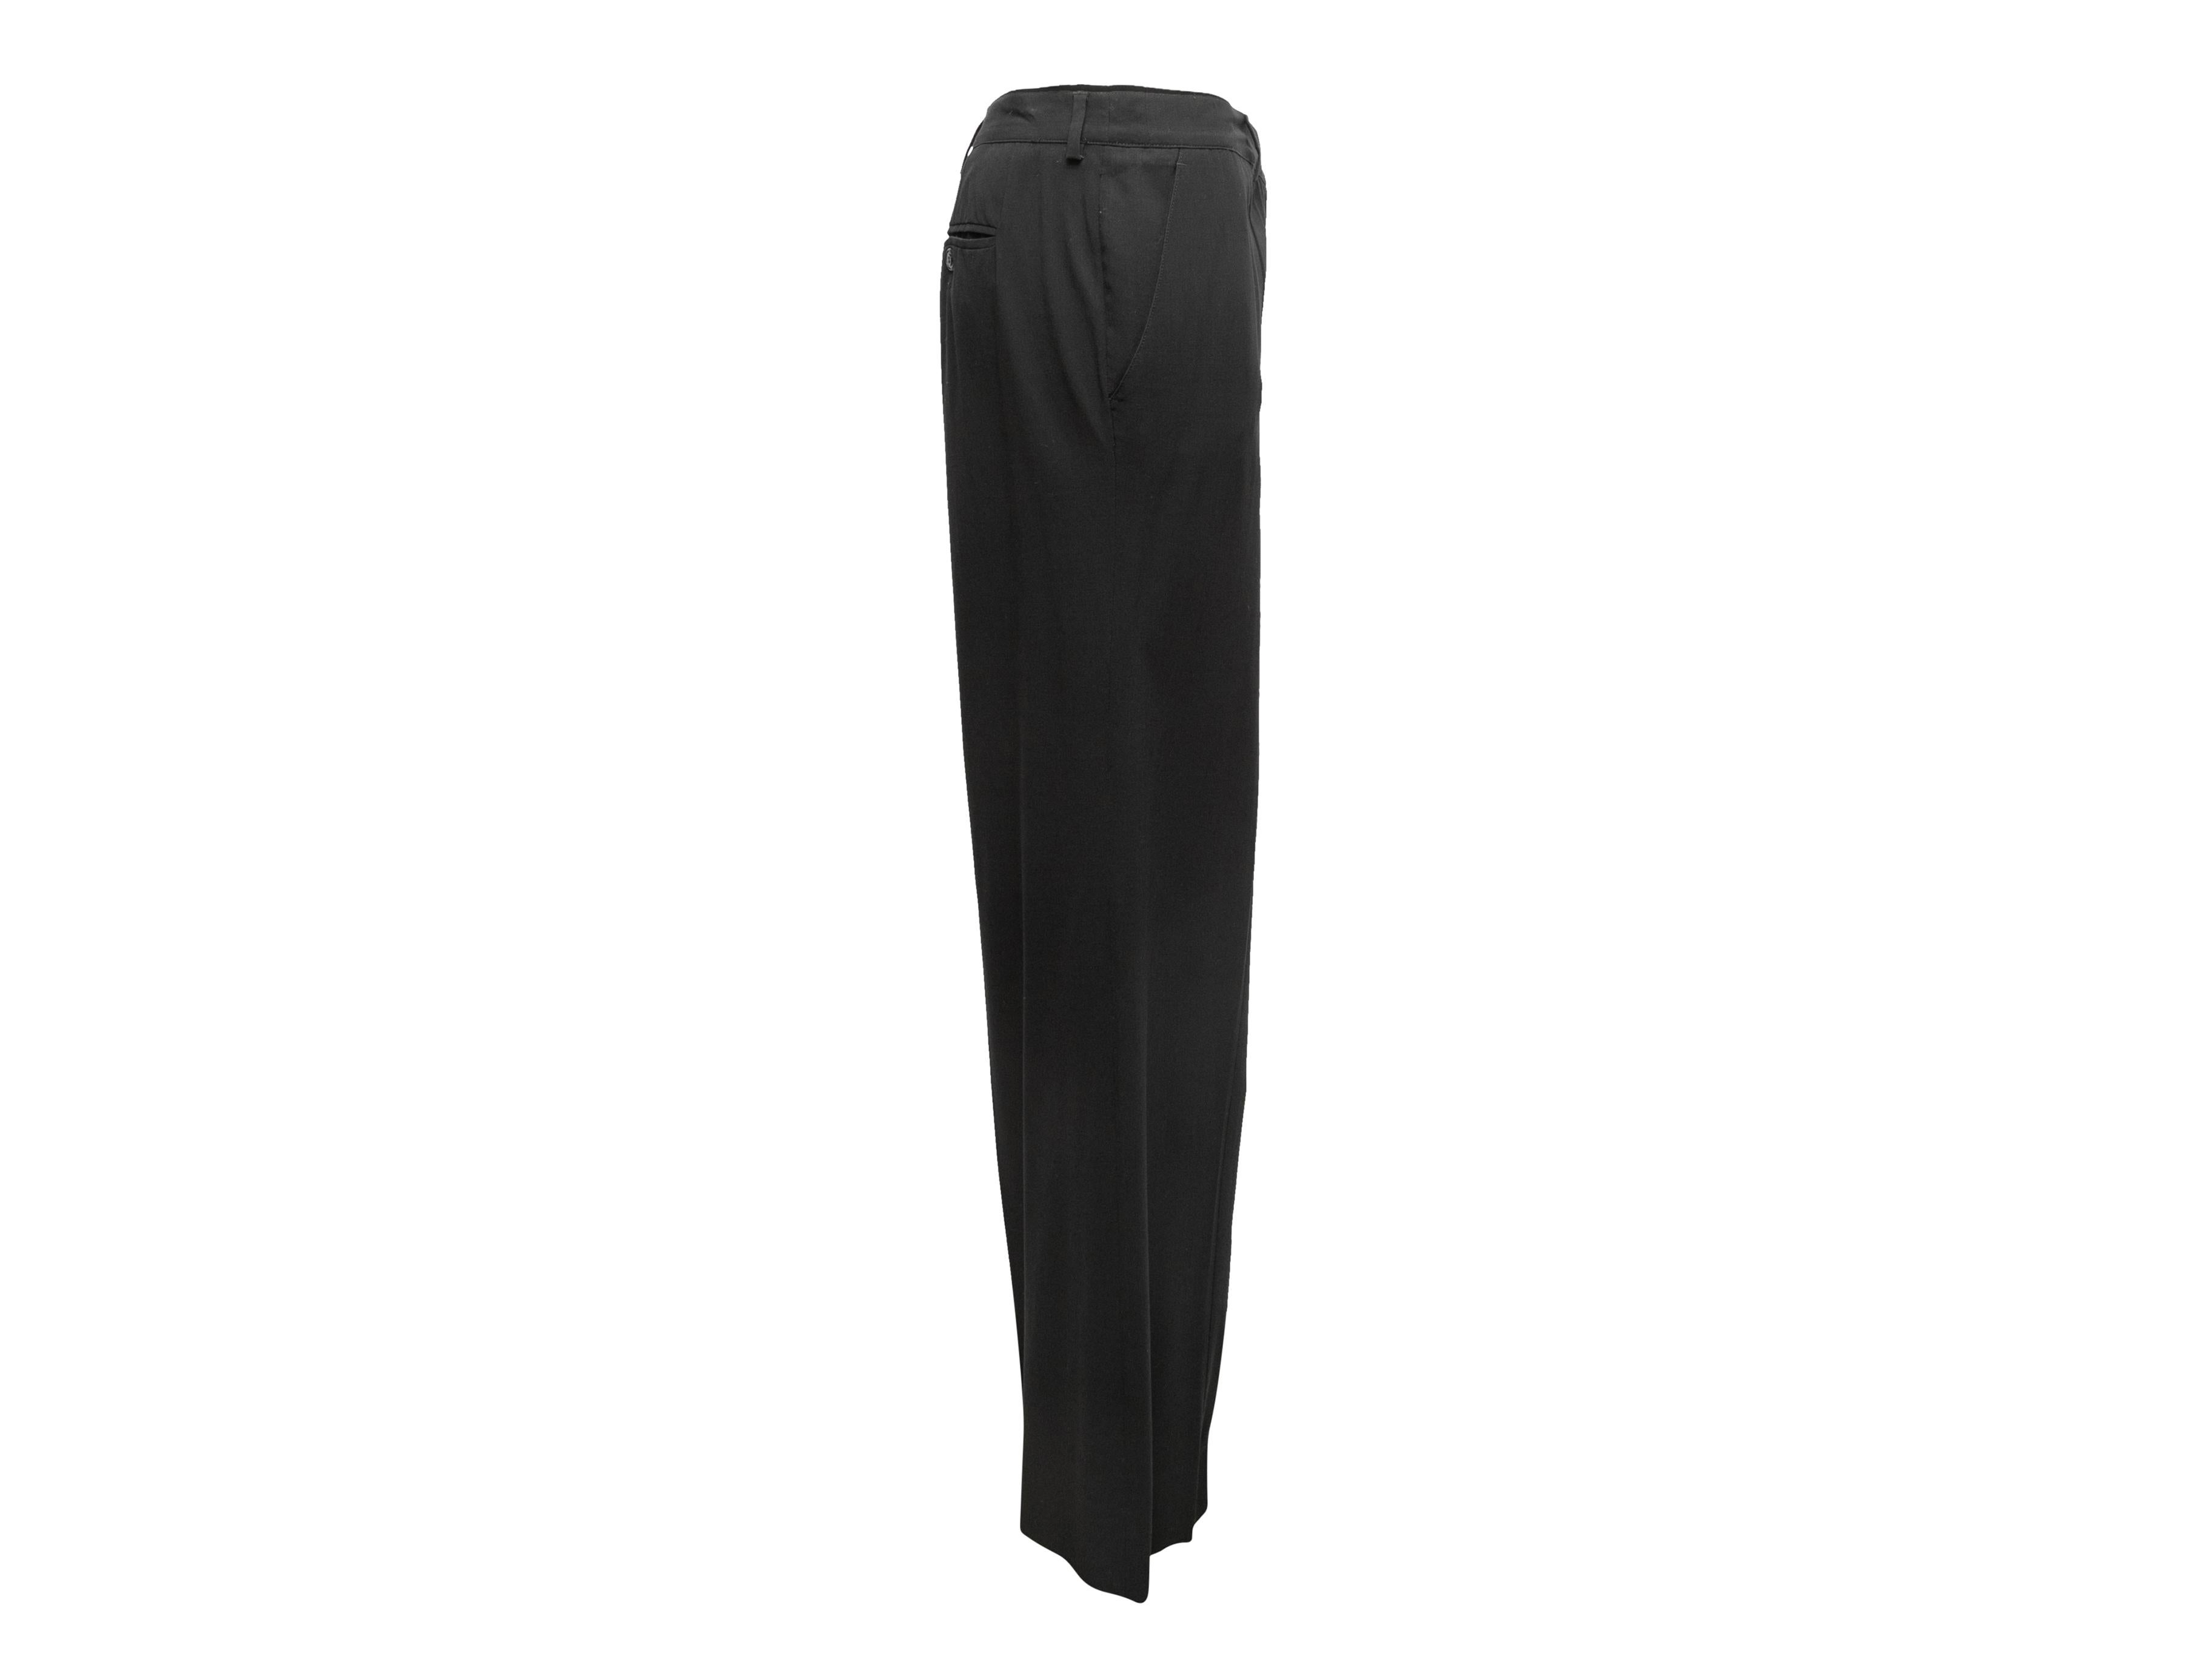 Pantalon vintage en laine noire de Chanel. De la collection printemps-été 2003. Trois poches. Fermeture à glissière sur le devant. Taille 39